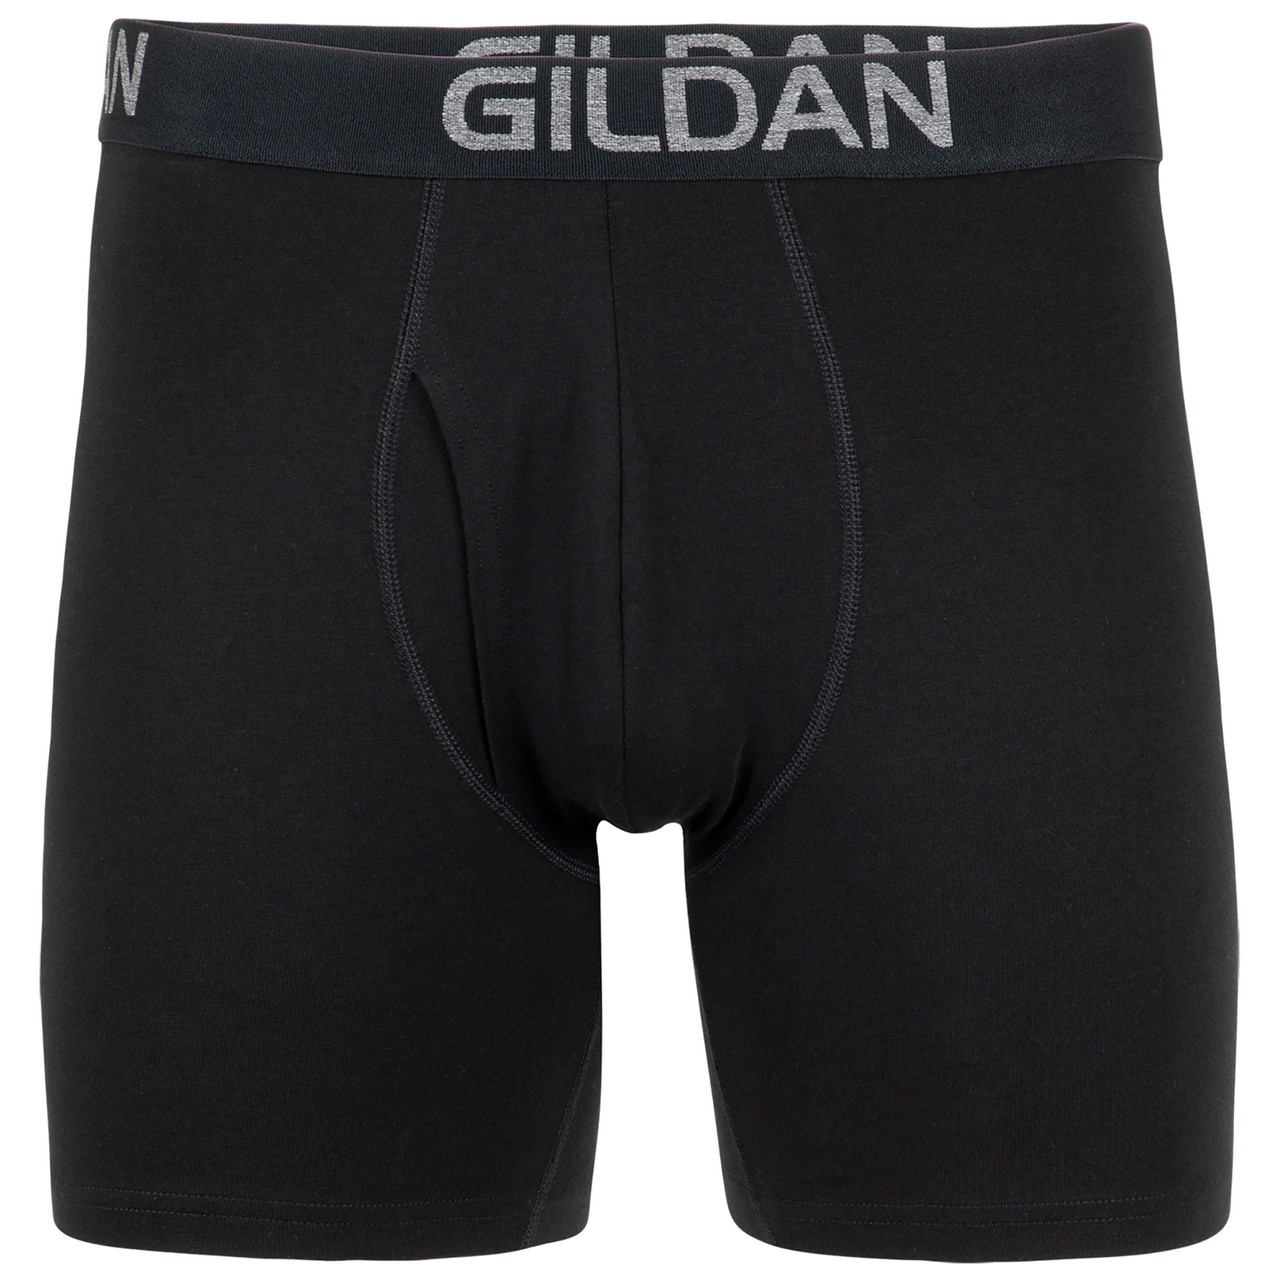 Gildan Men's Regular Leg Boxer Briefs, Multipack, Navy/Heather Navy/Sport  Grey Heather/Dot (5-Pack), Small 